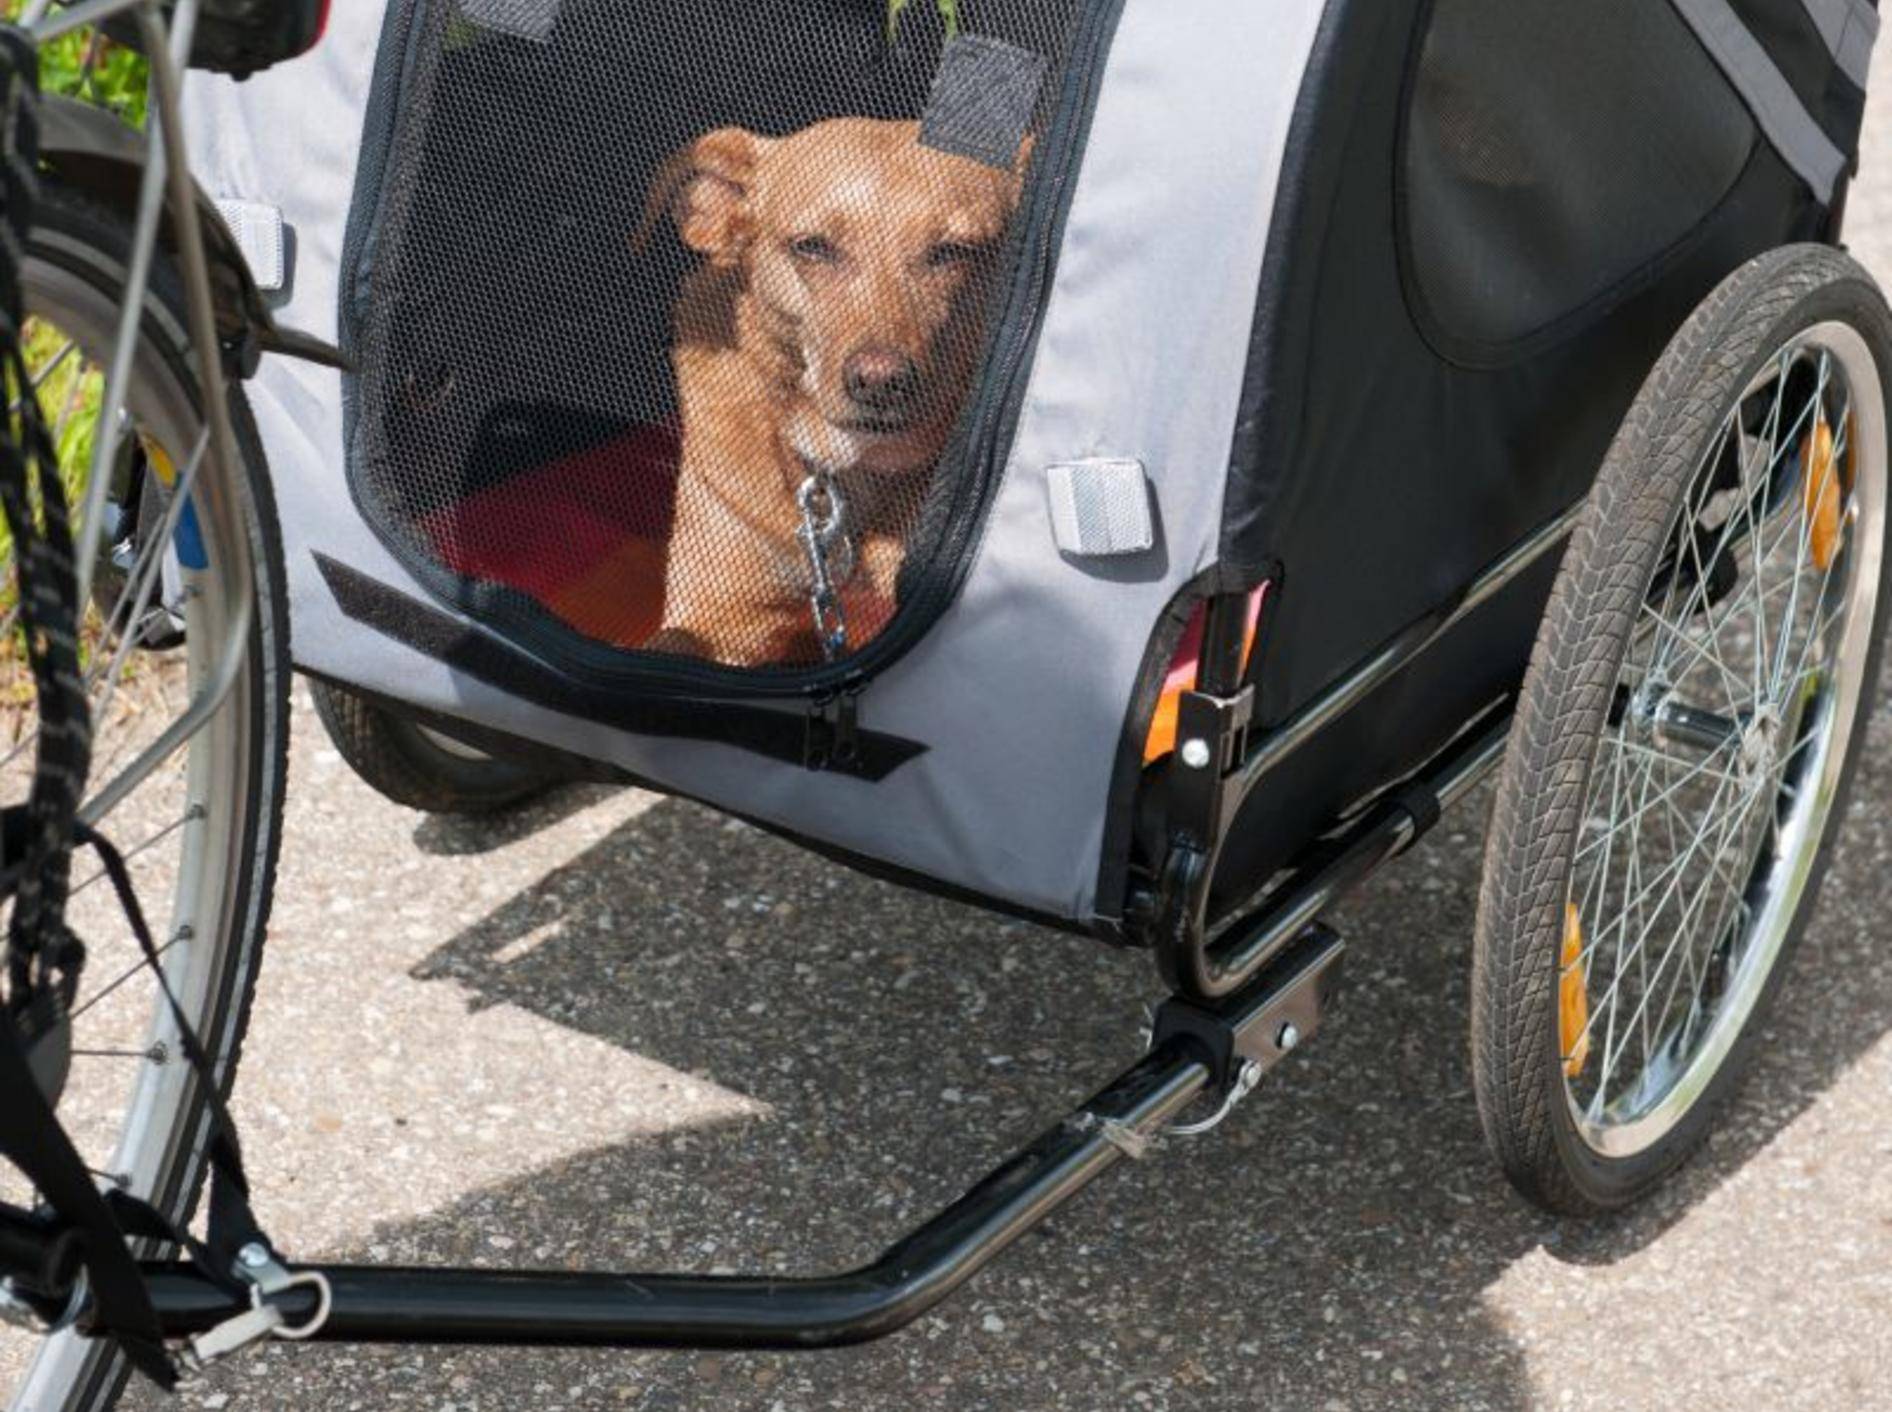 Praktisch: Fahrrad-Anhänger für Hunde – Bild: Shutterstock / Ivonne Wierink